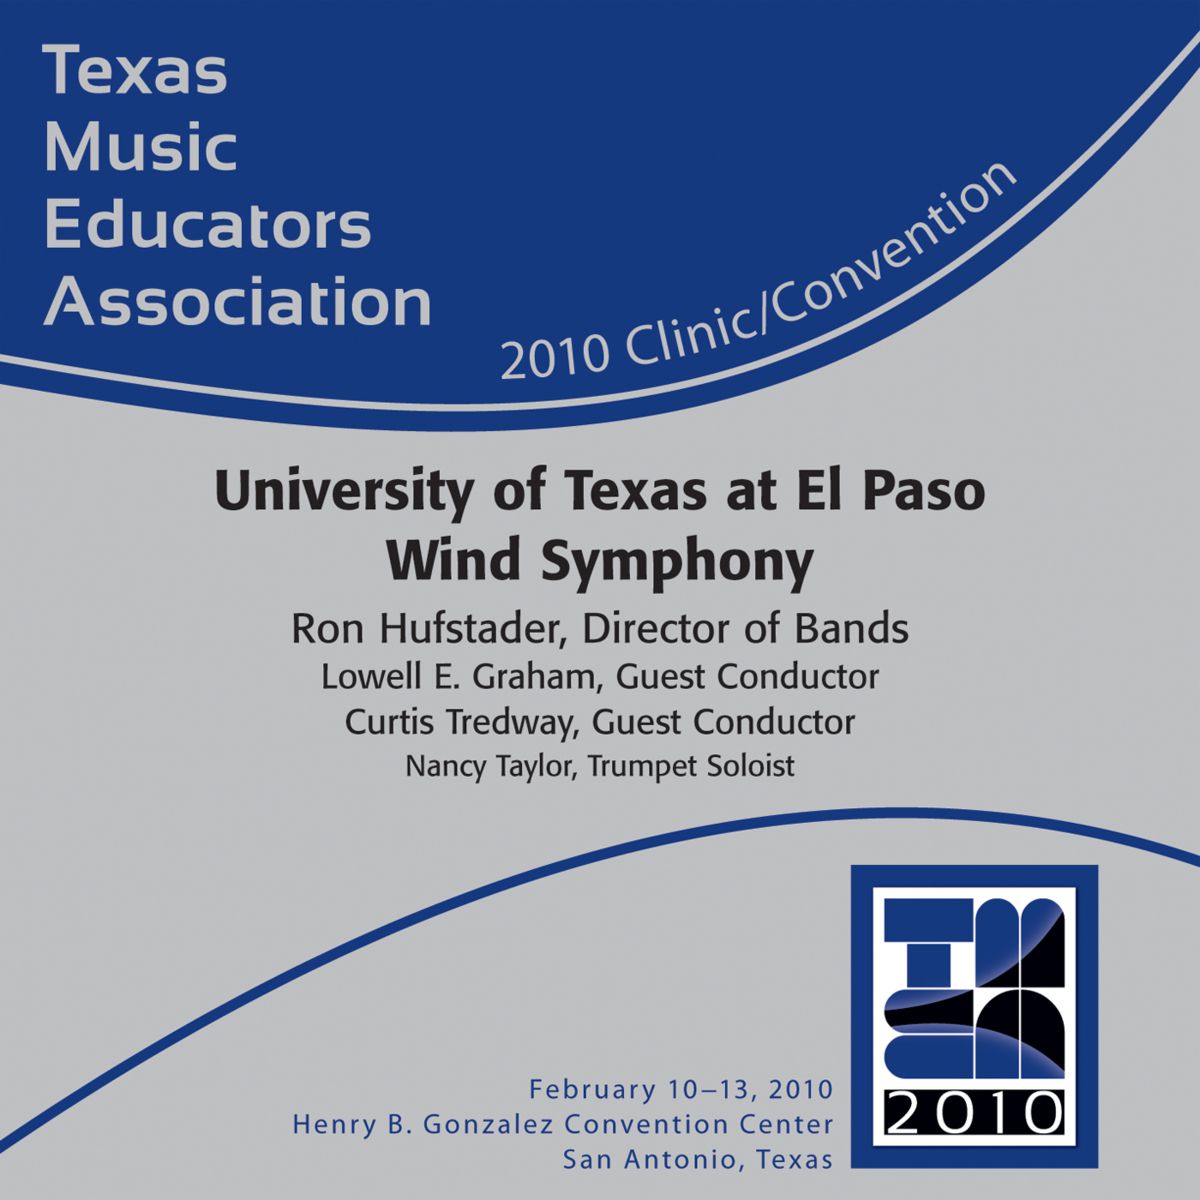 2010 Texas Music Educators Association: University of Texas at El Paso Wind Symphony - clicca qui